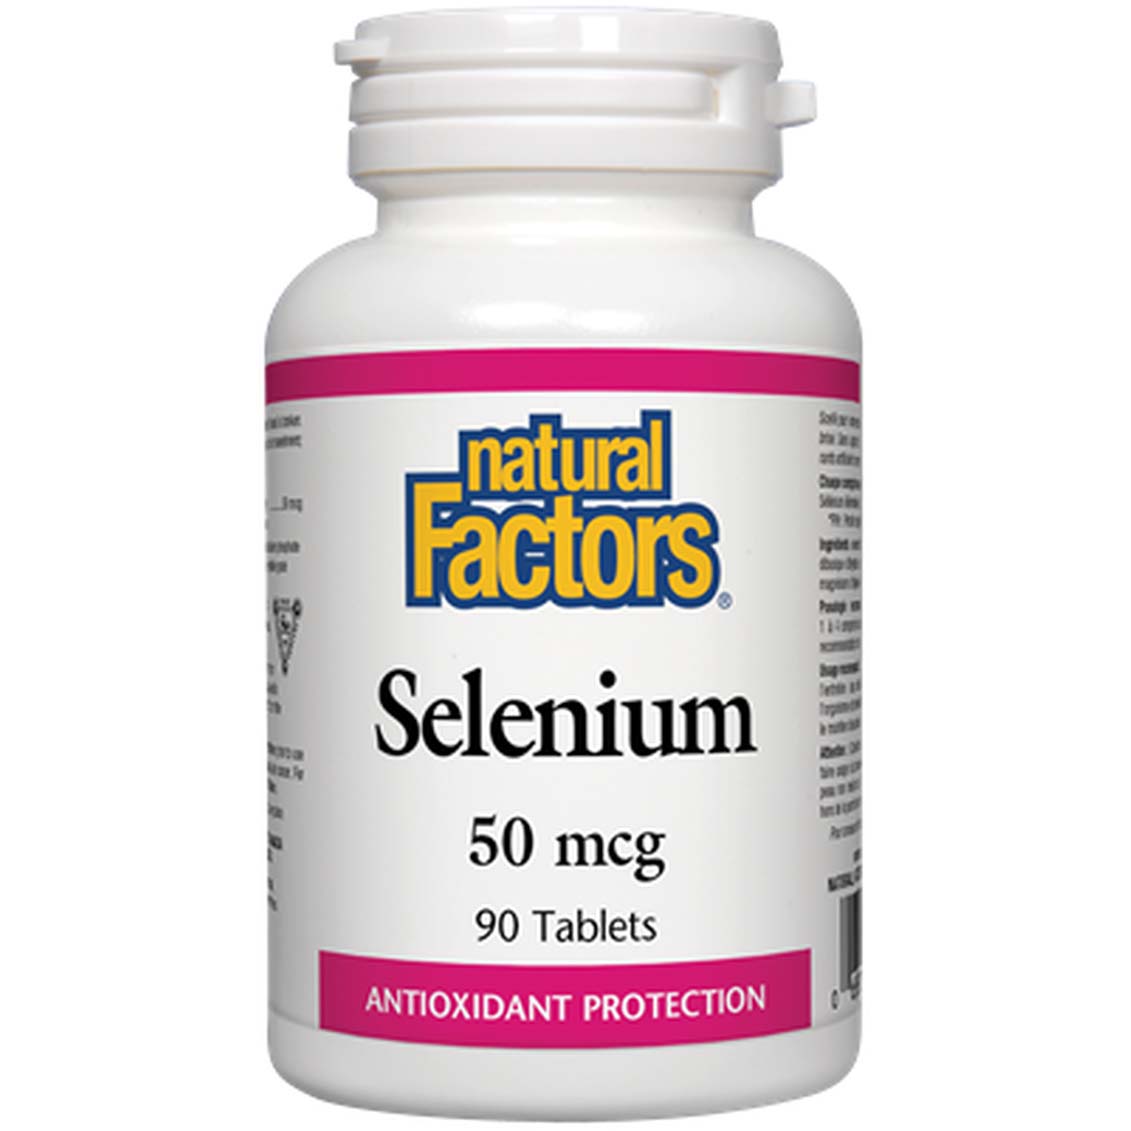 Natural Factors Selenium 90 Tablets 50 mcg